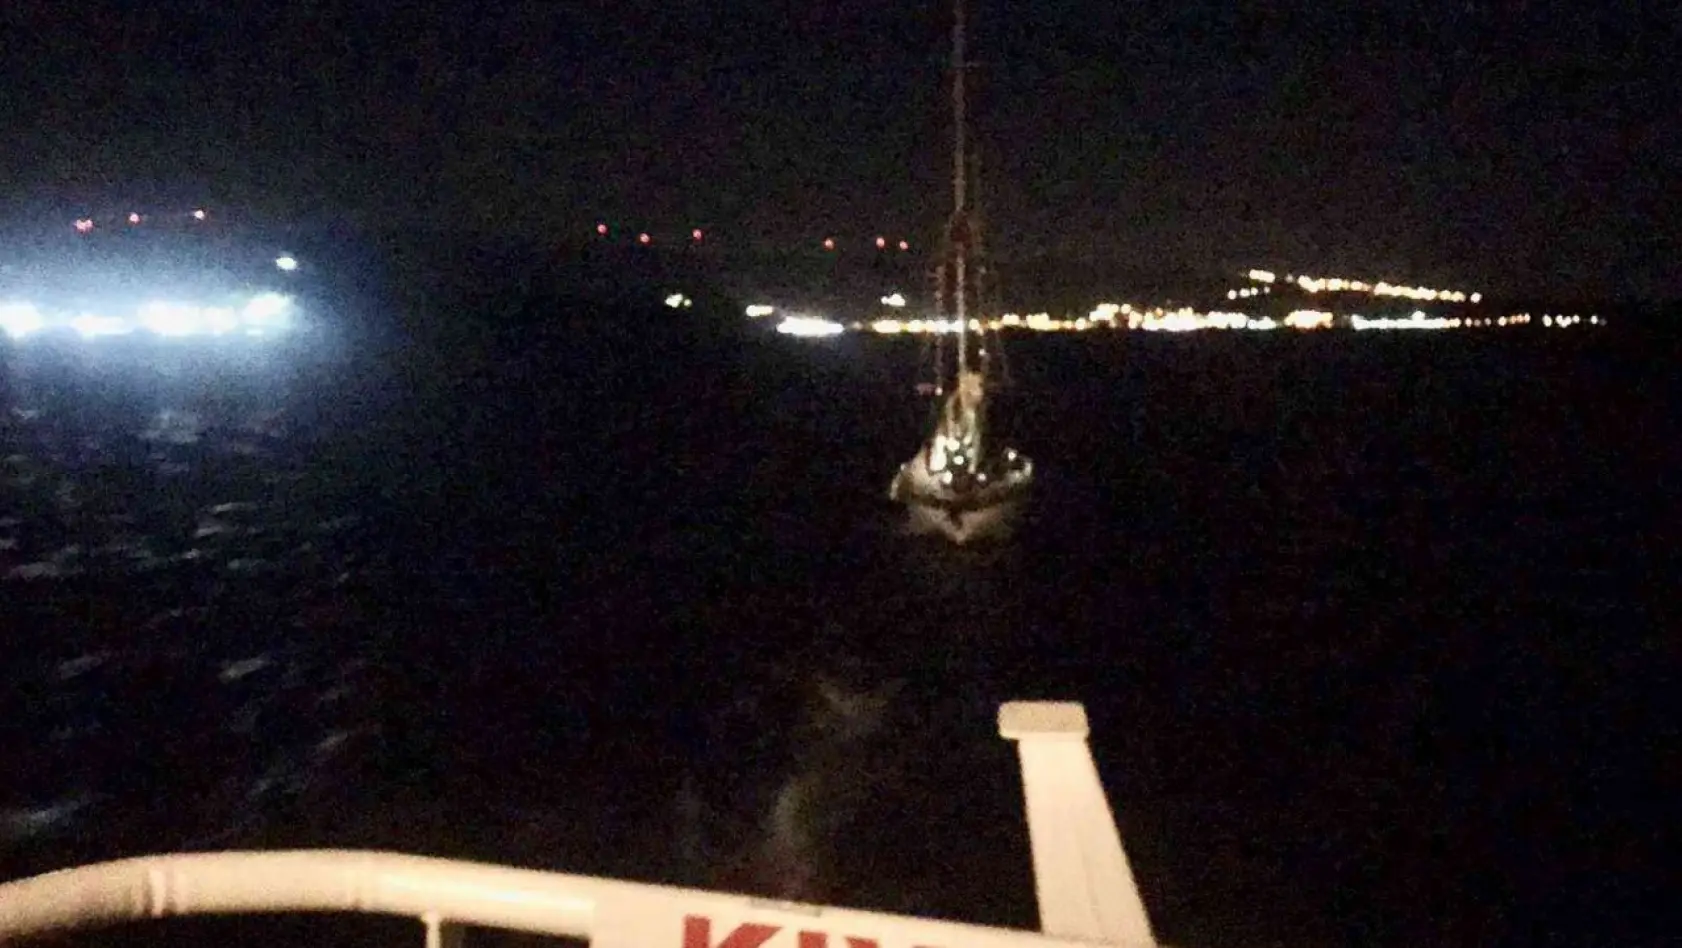 Çanakkale açıklarında sürüklenen tekne kurtarıldı